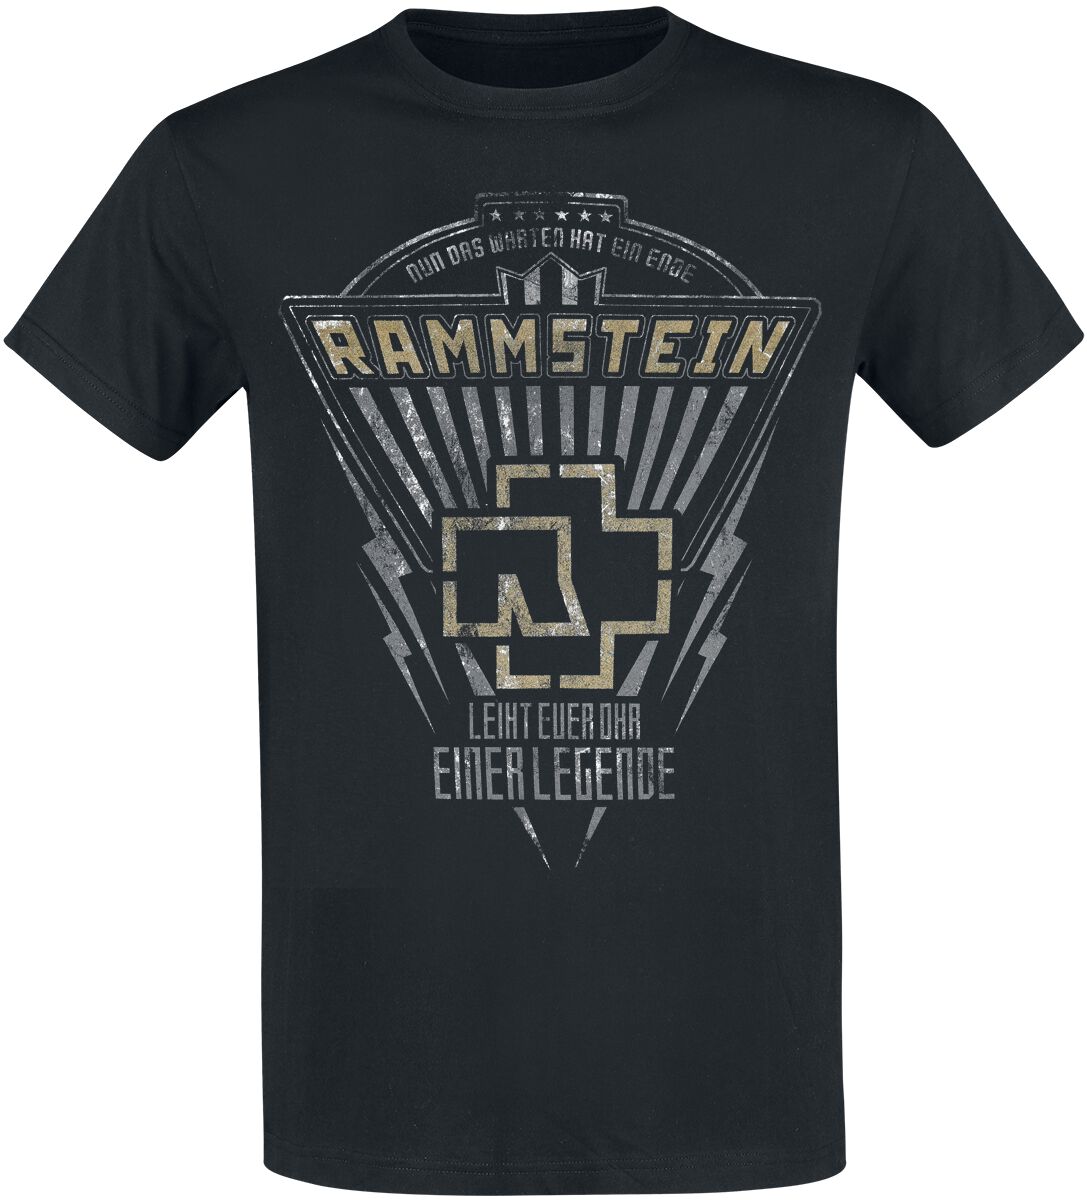 Rammstein T-Shirt - Legende - XL - für Männer - Größe XL - schwarz  - Lizenziertes Merchandise!